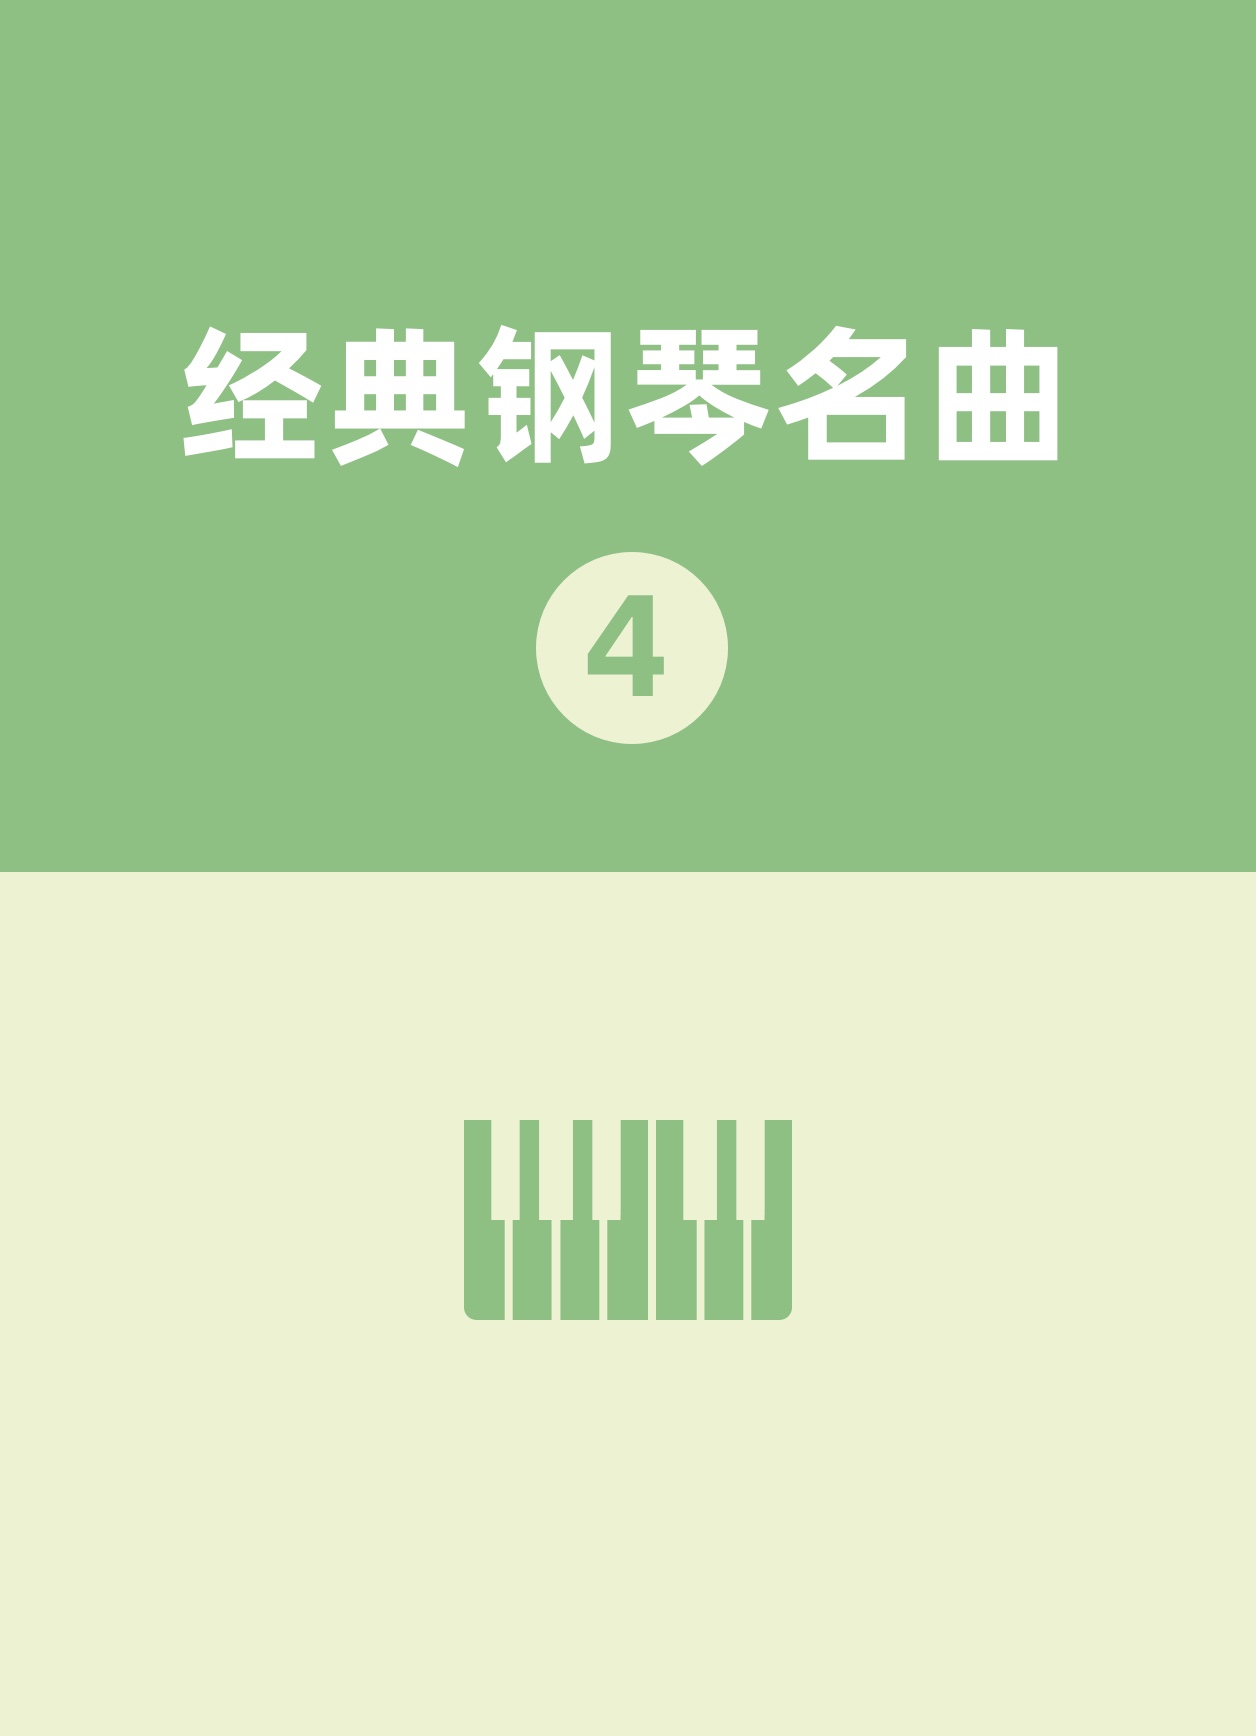 7.练习曲钢琴简谱 数字双手